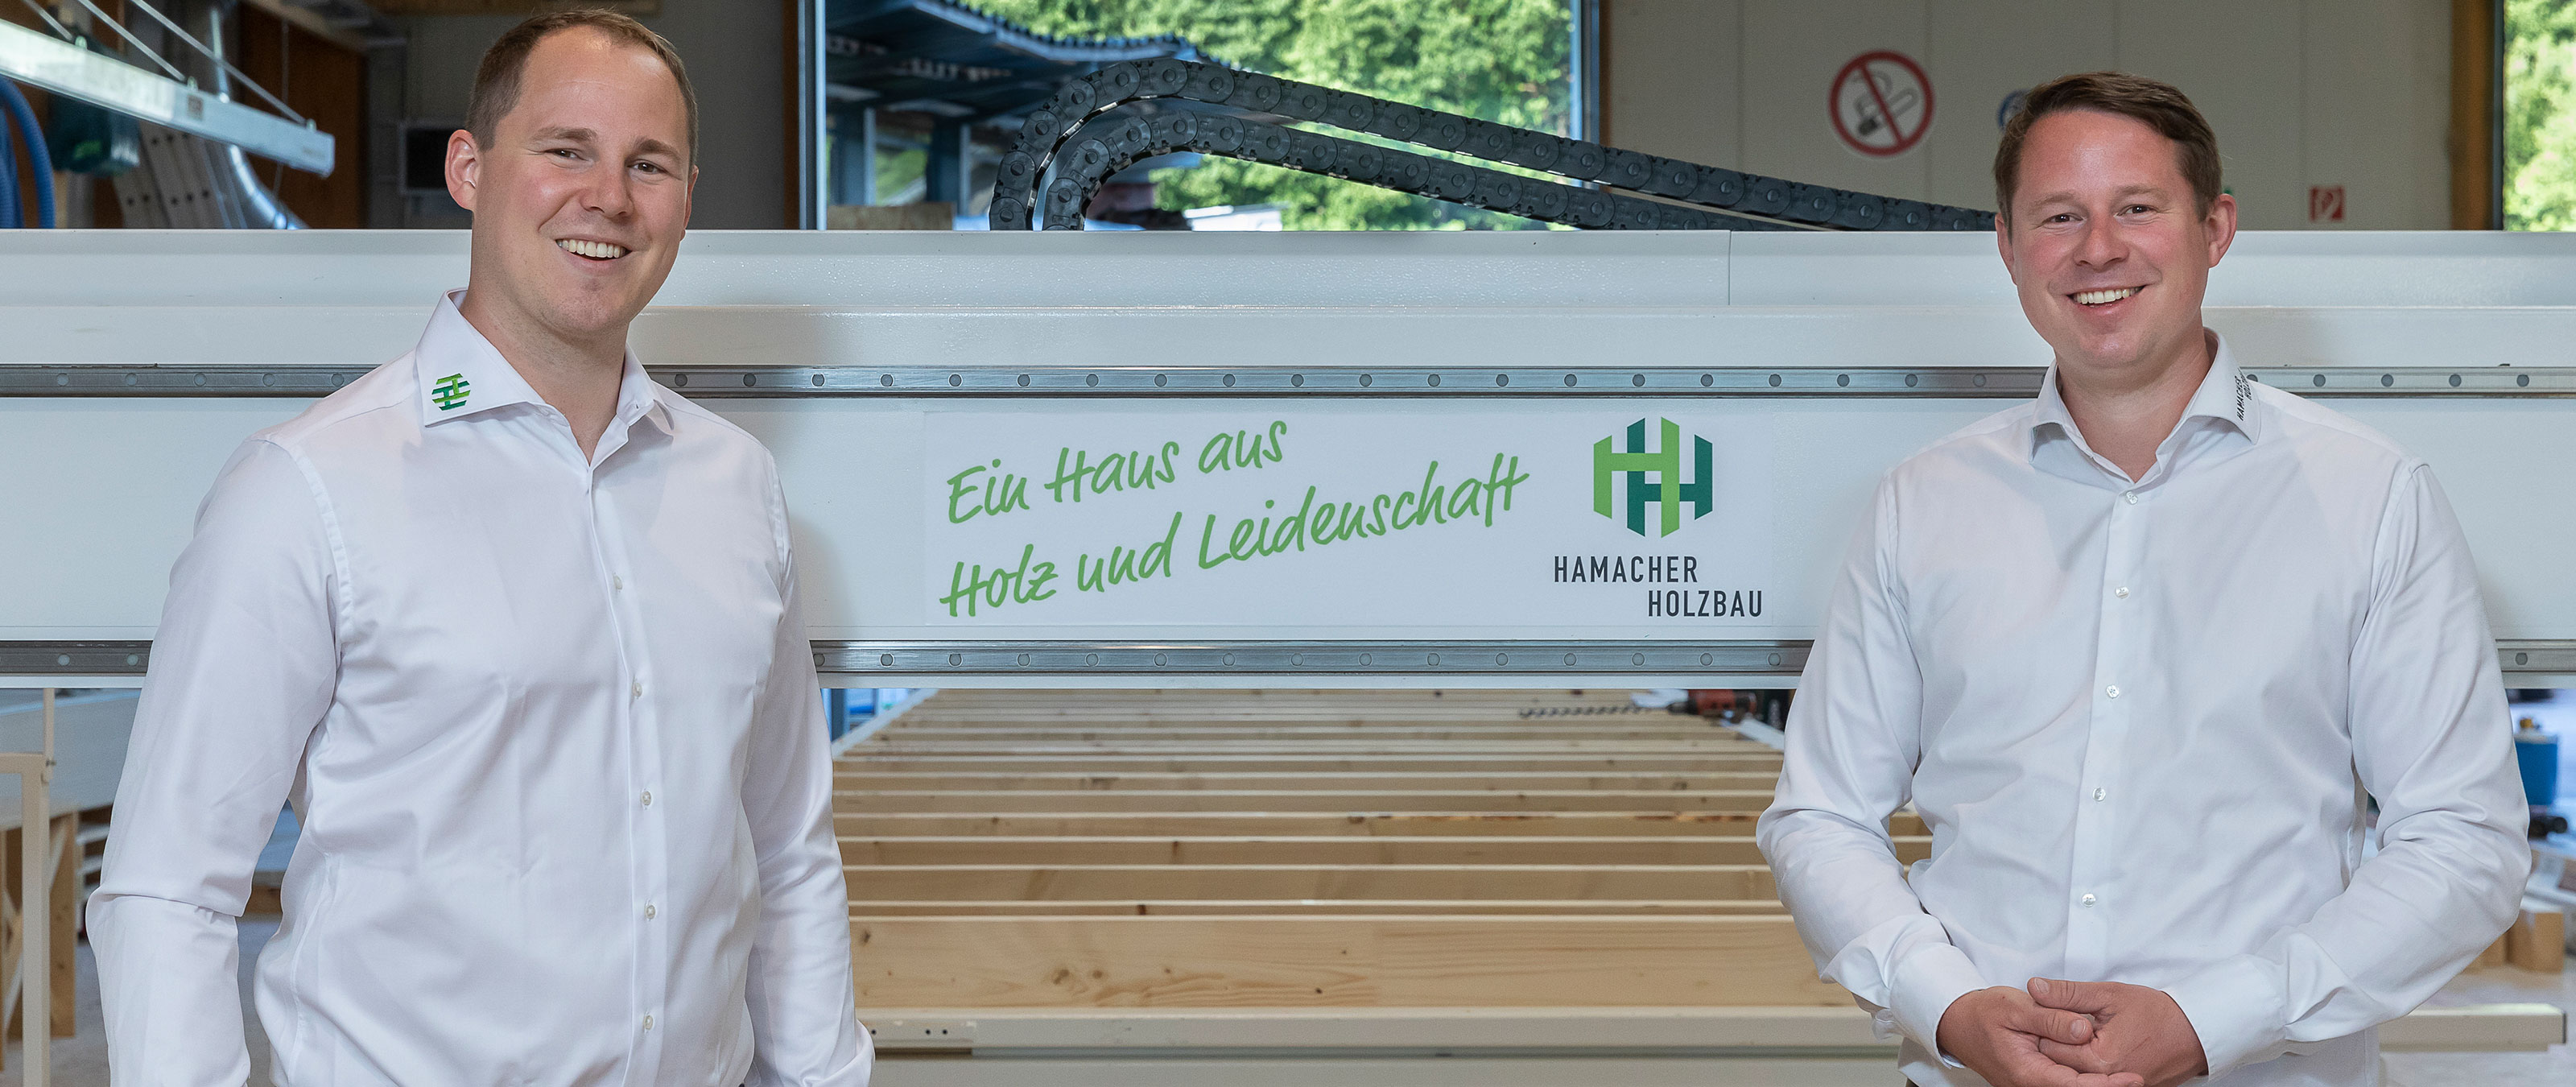 Directeurs de la société Hamacher GmbH